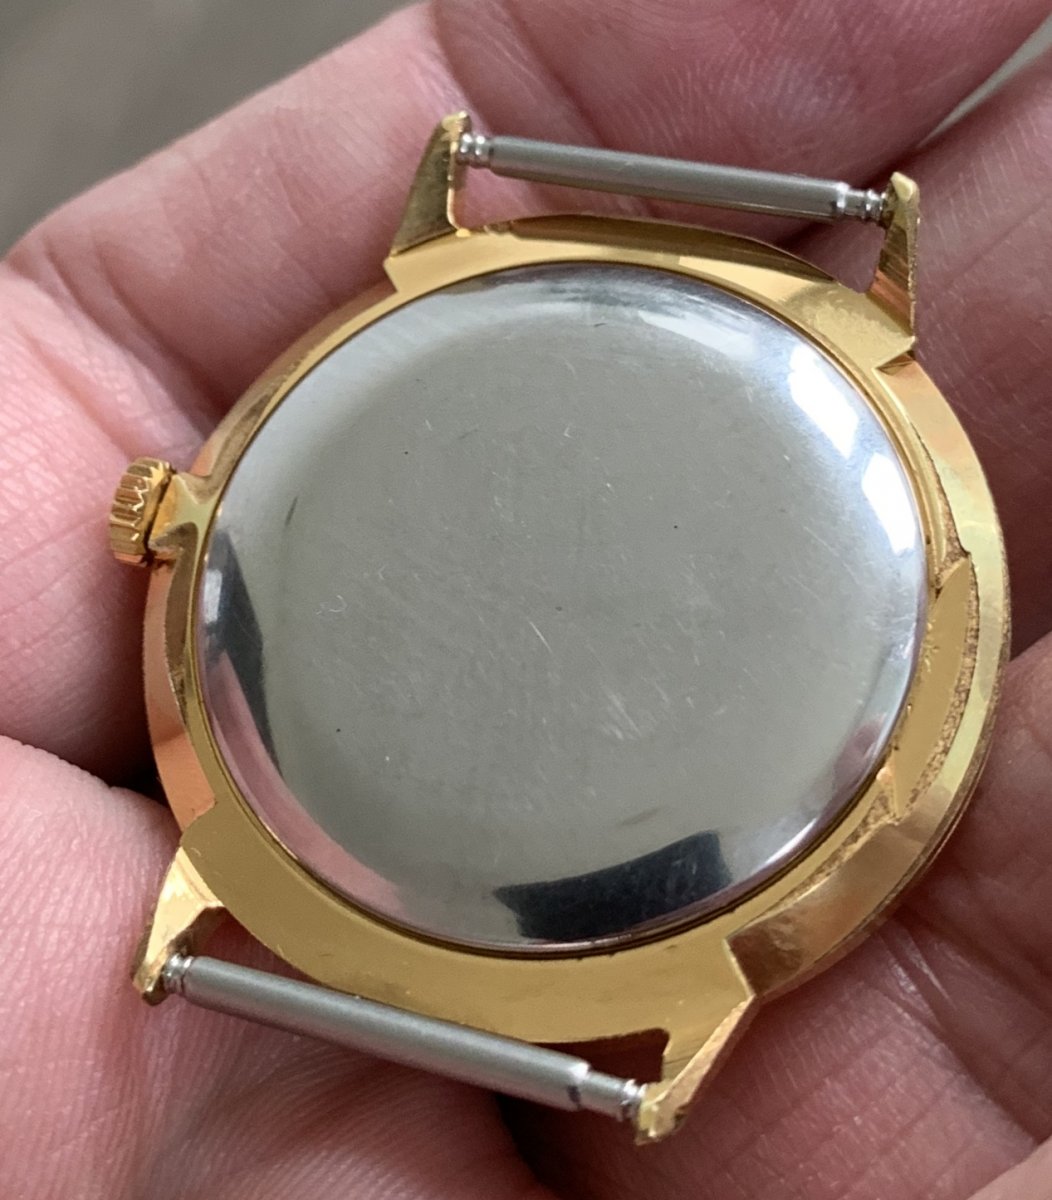 Elegantné pozlátene hodinky Prim cal 68 v top zbierkovom stave, priemer púzdra 34mm